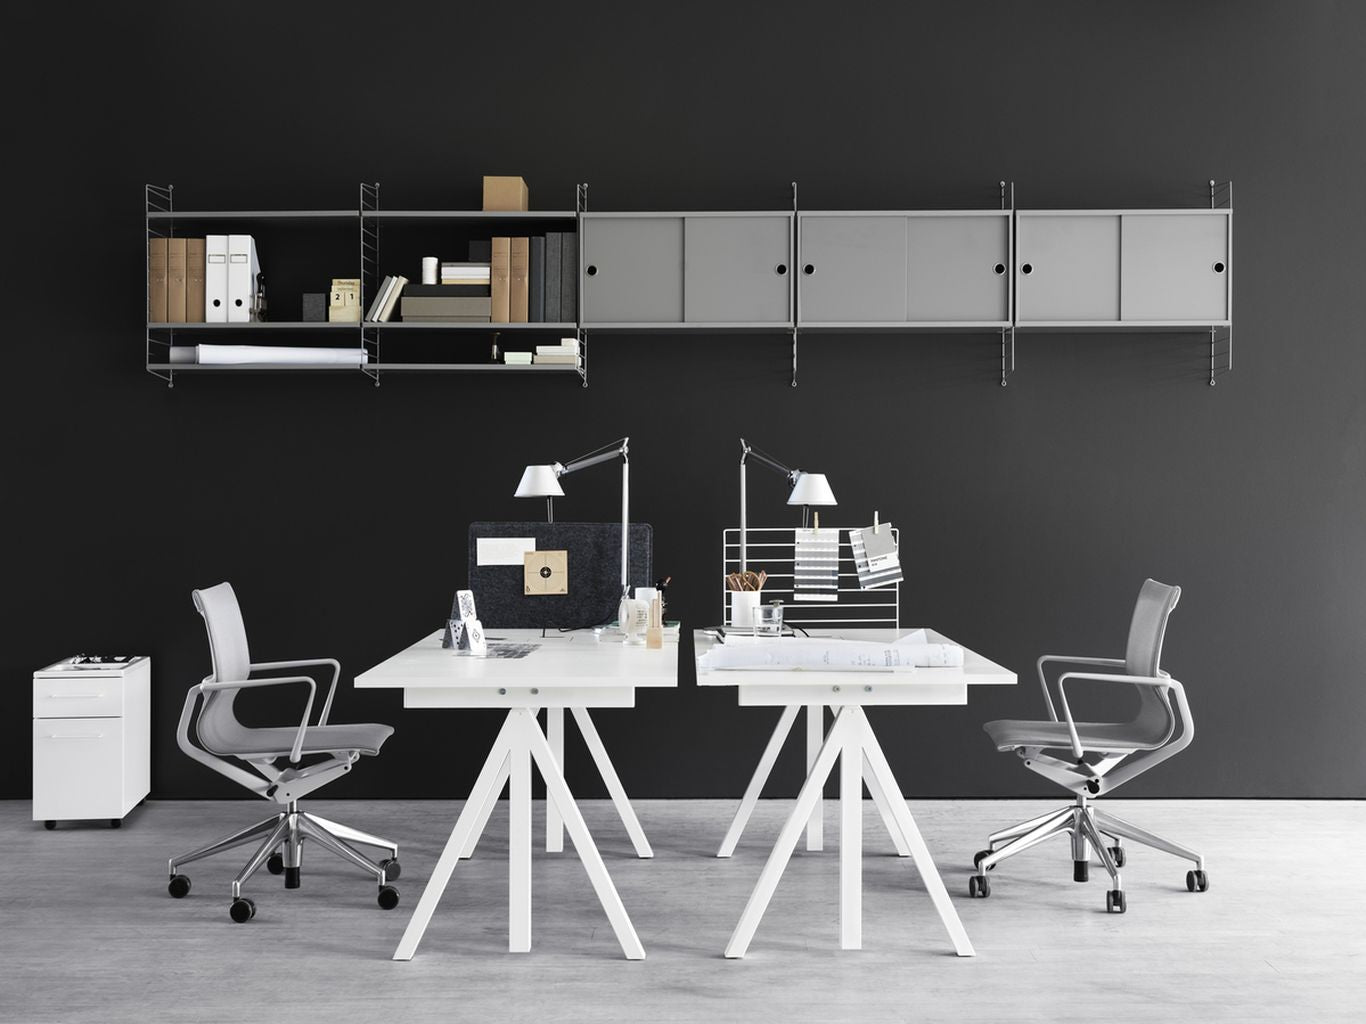 String Furniture Fungerar höjd justerbar skrivbord 78x160 cm, vit laminat